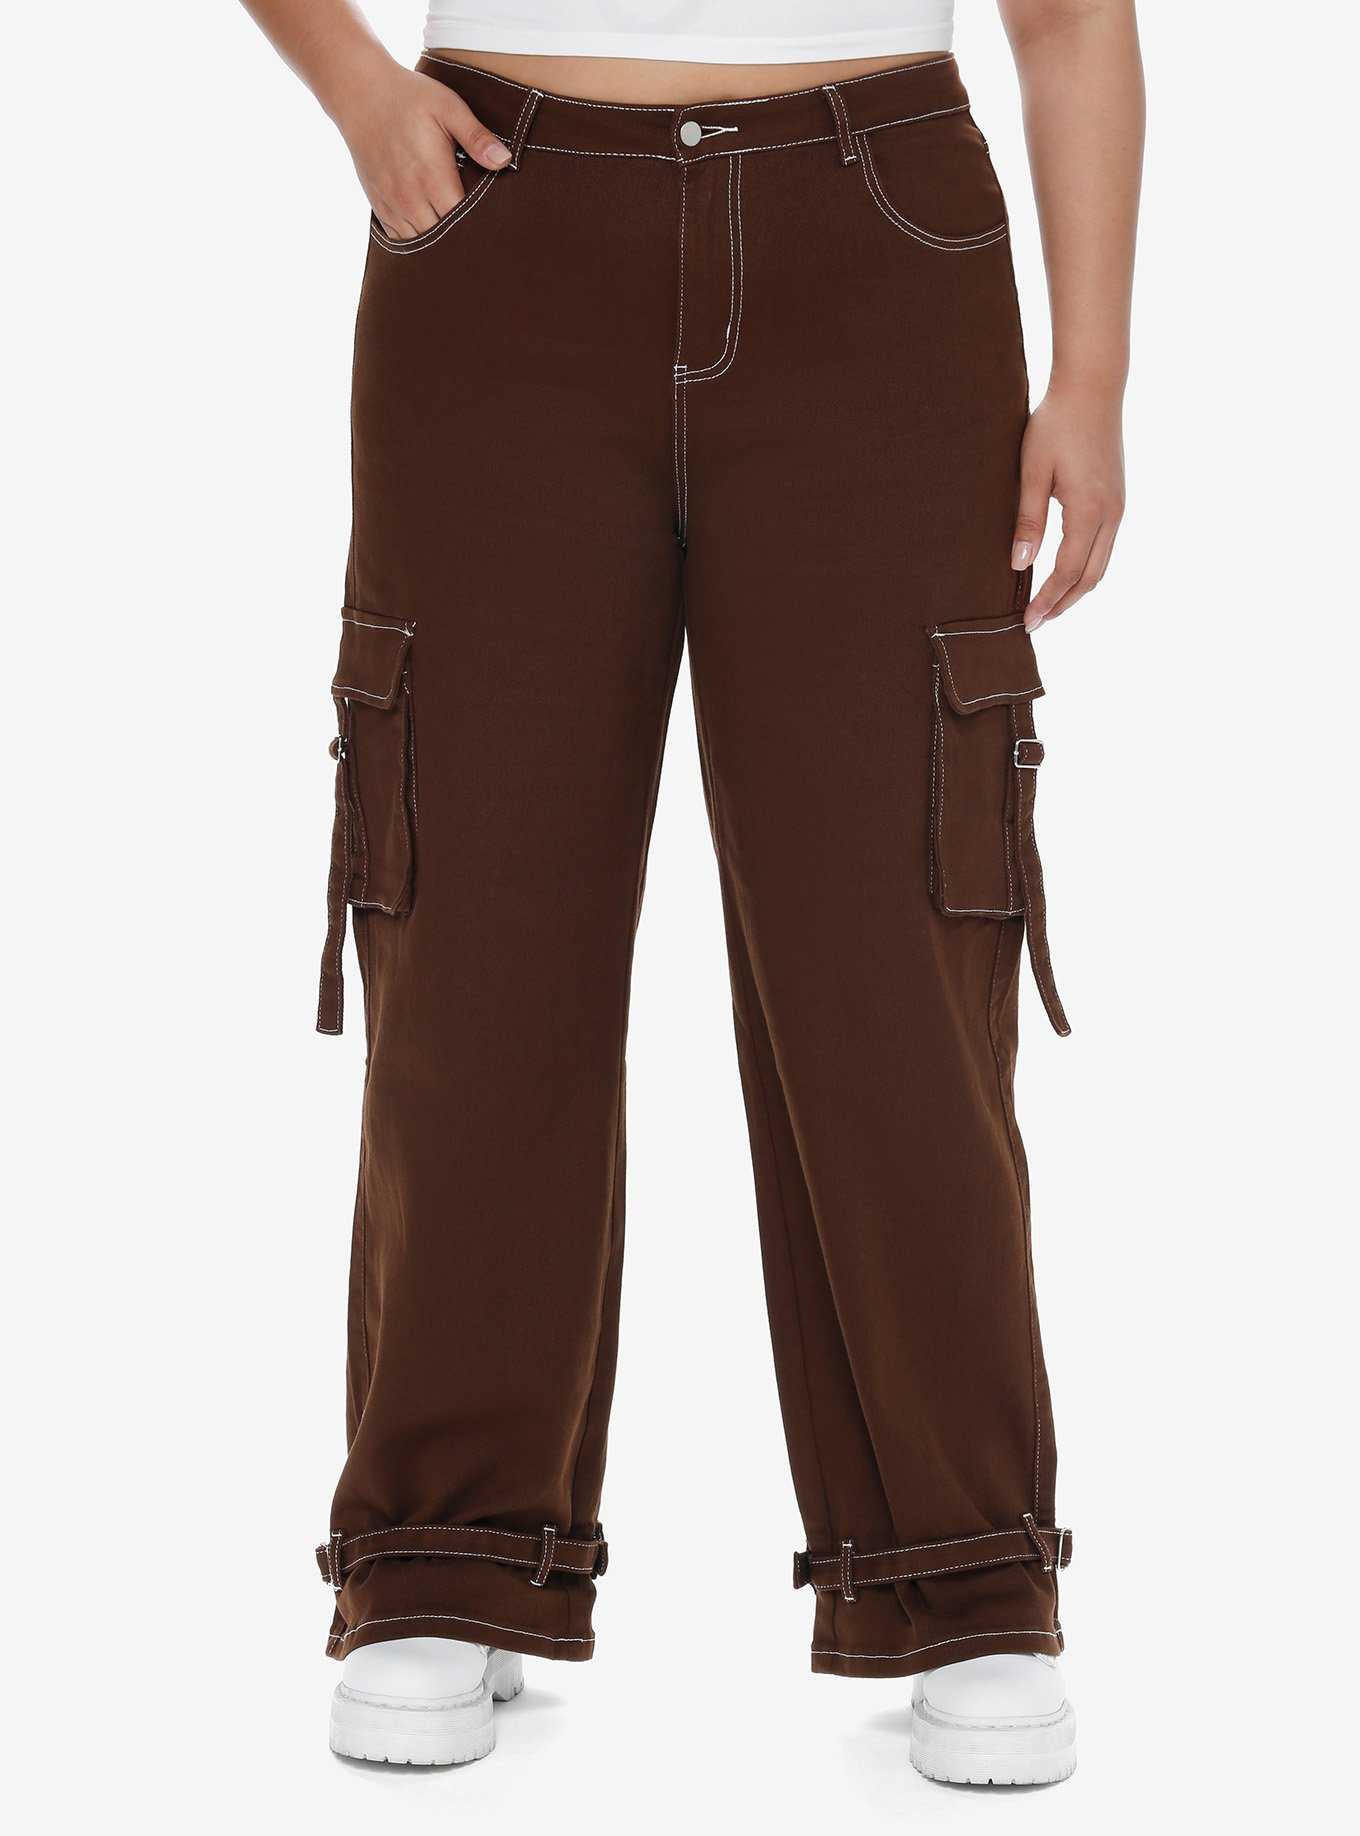 Brown Contrast Stitch Strap Carpenter Pants Plus Size, , hi-res